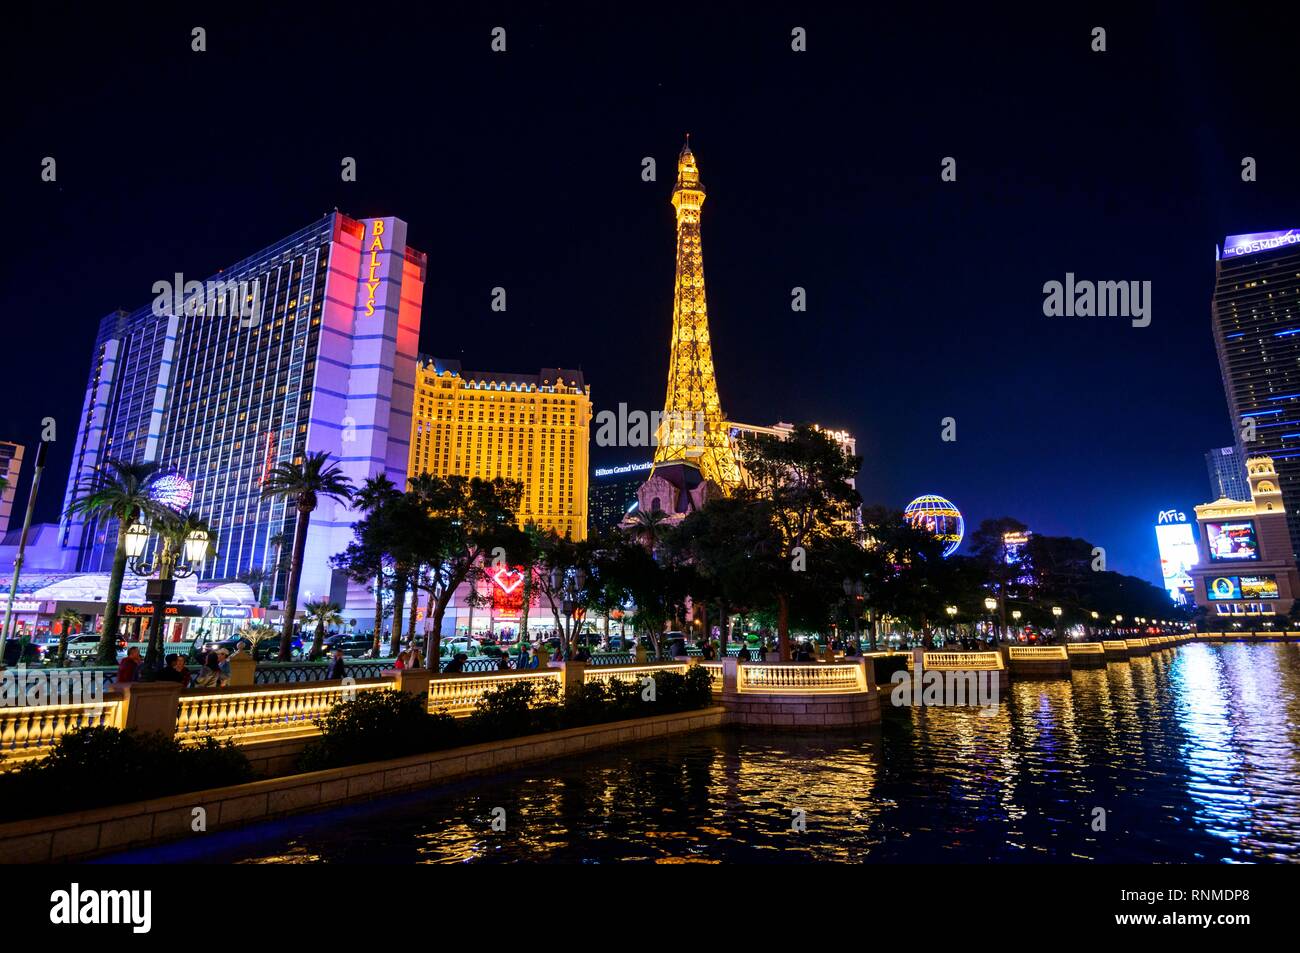 The Strip at Night, Las Vegas Strip, backlit Bally's Las Vegas and Paris Las Vegas Hotel and Casino at Night Stock Photo